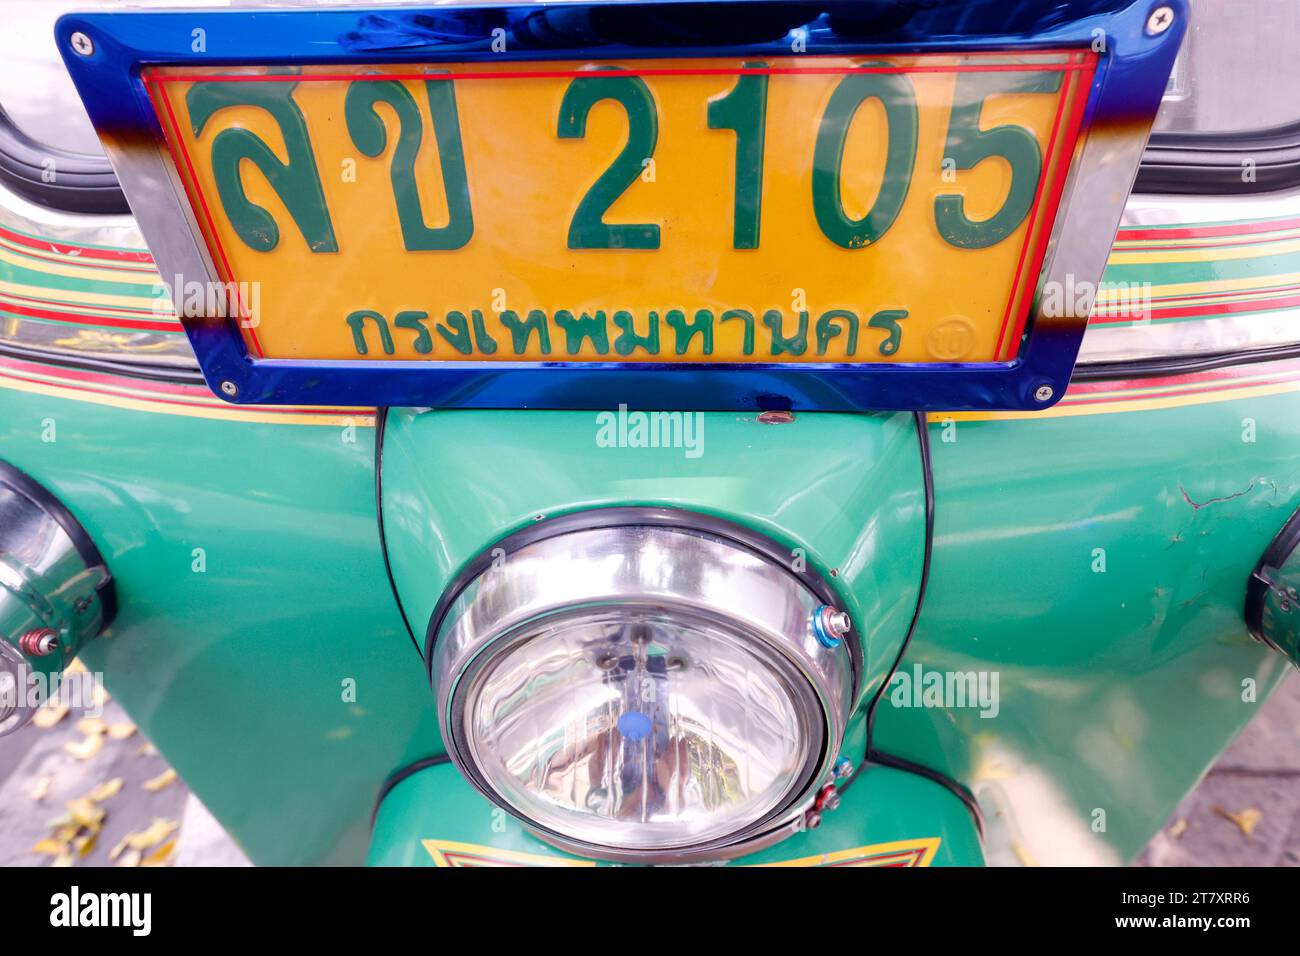 Nahaufnahme des Kennzeichens eines Tuk Tuk, ein Taxi, das für Südostasien, Bangkok, Thailand, Südostasien, Asien charakteristisch ist Stockfoto